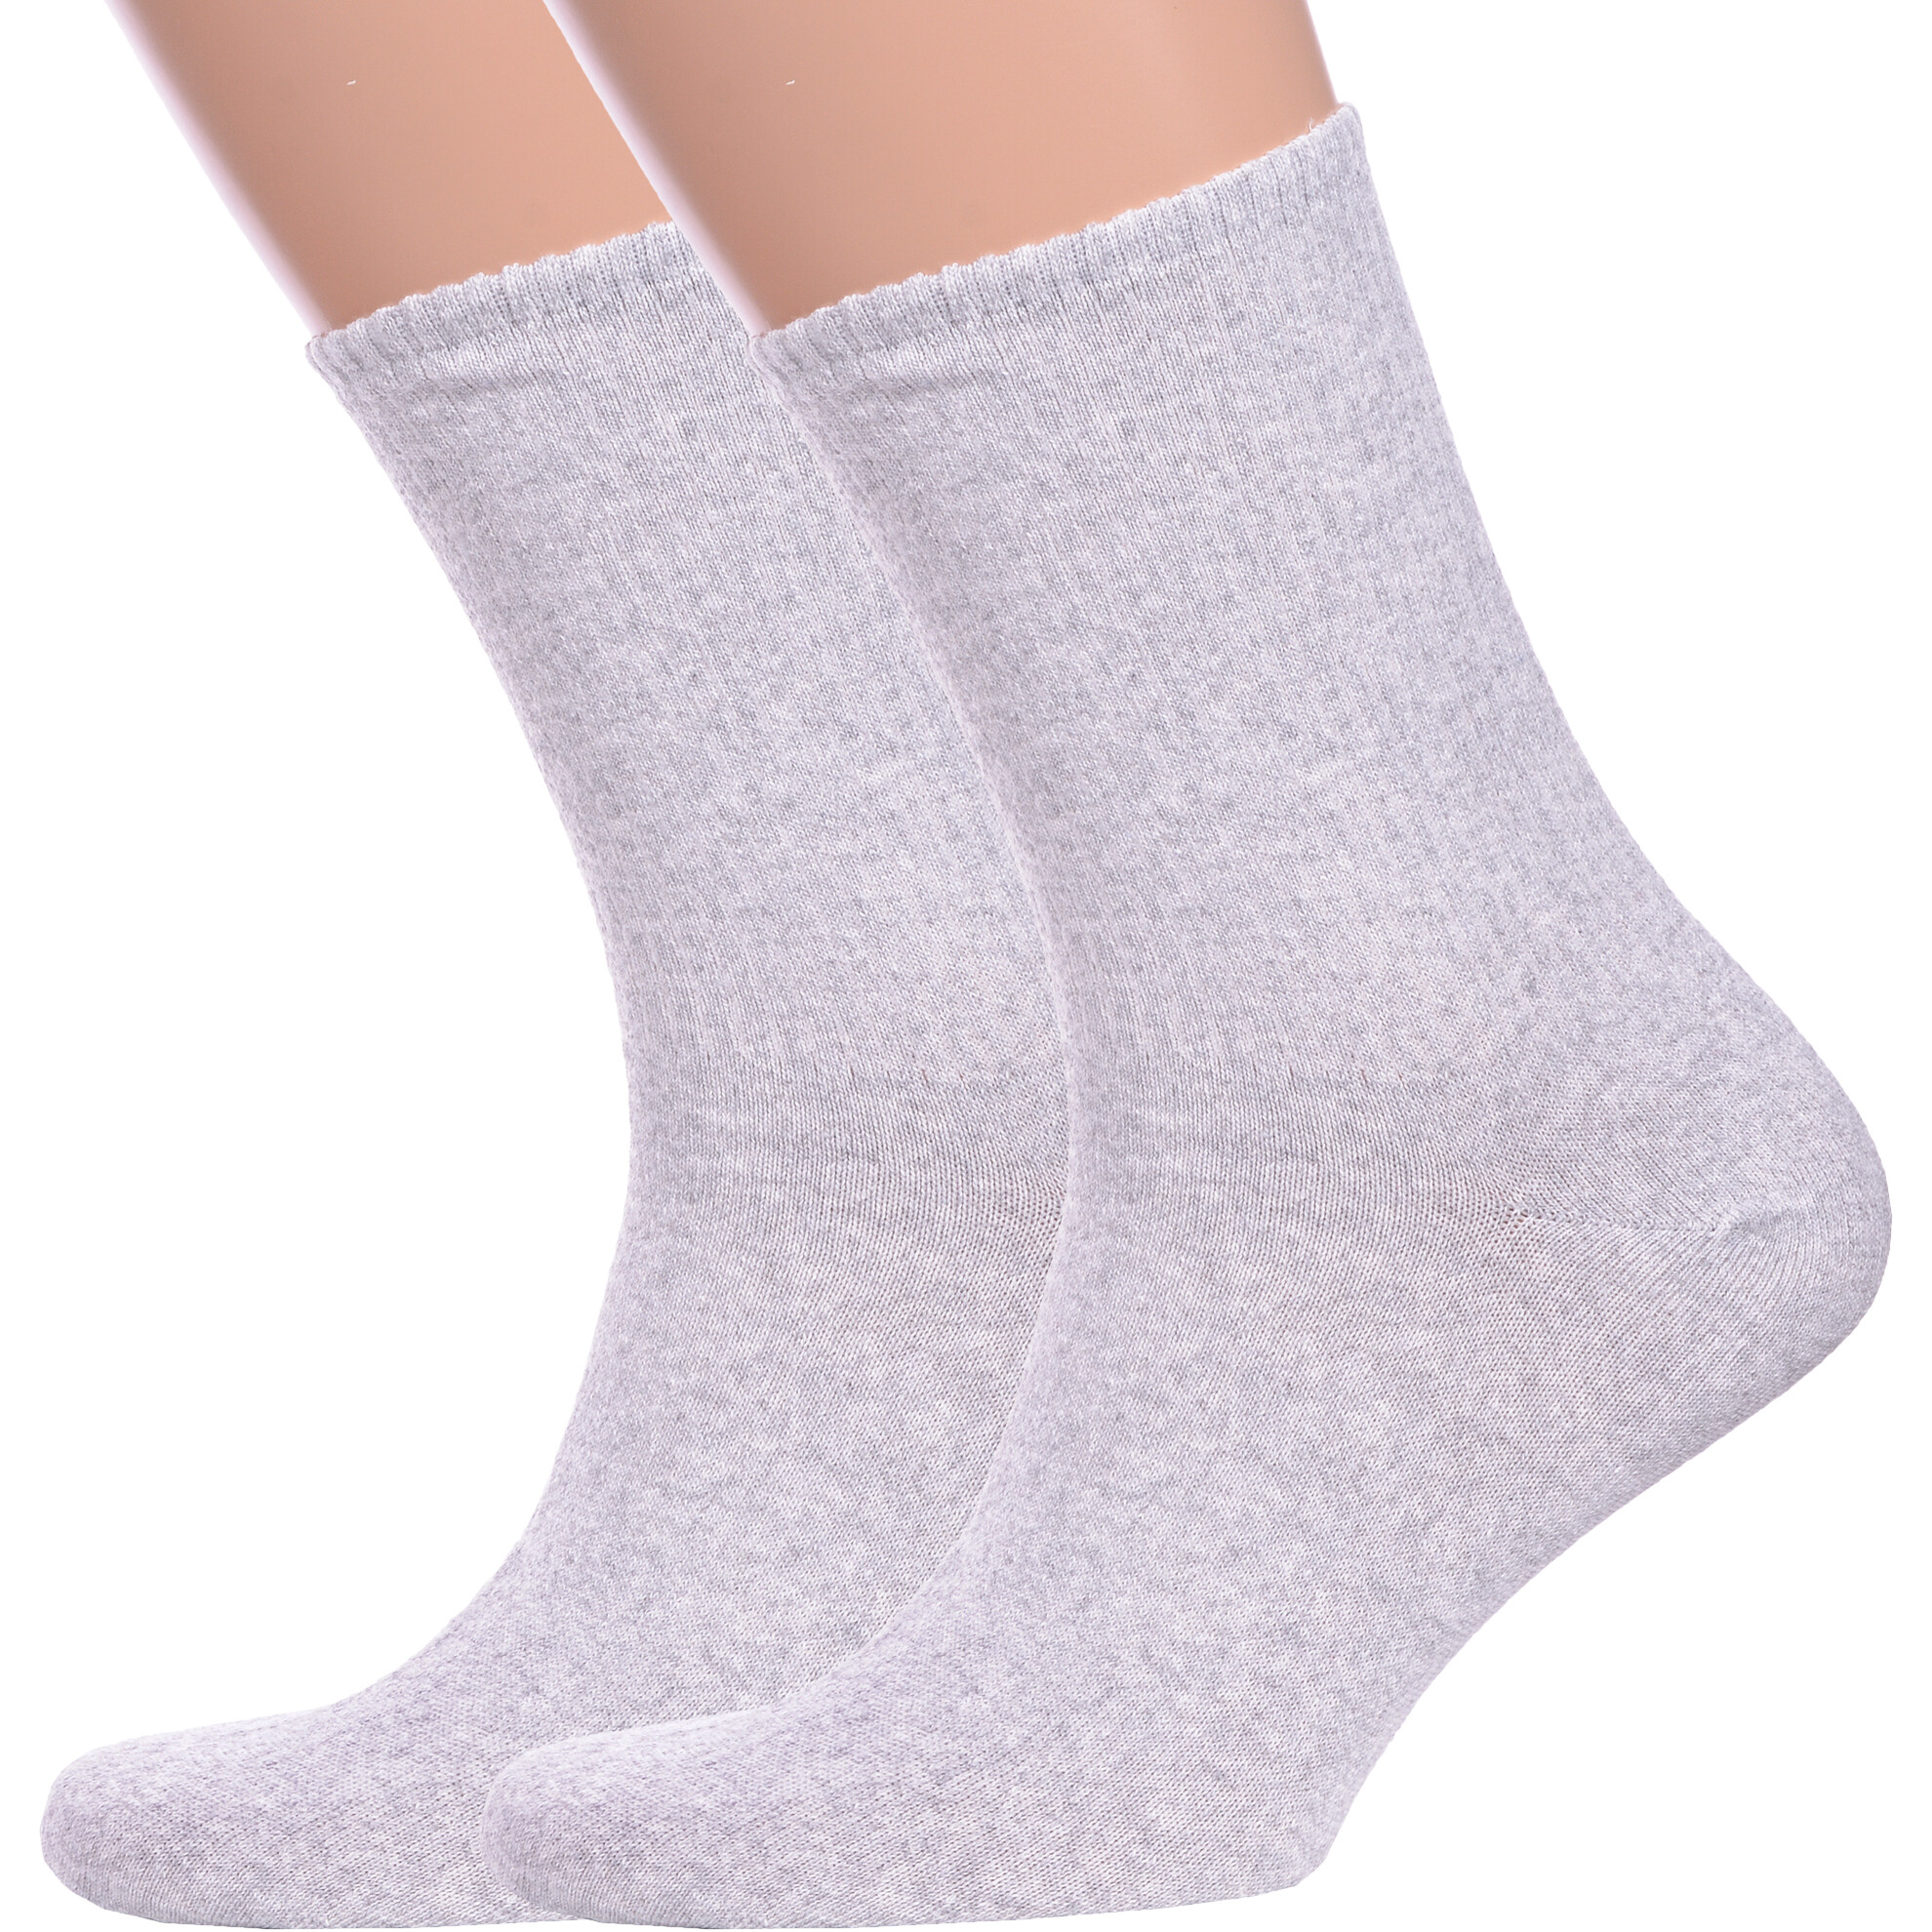 Комплект носков мужских Альтаир 2-М85 серых 29 2 пары